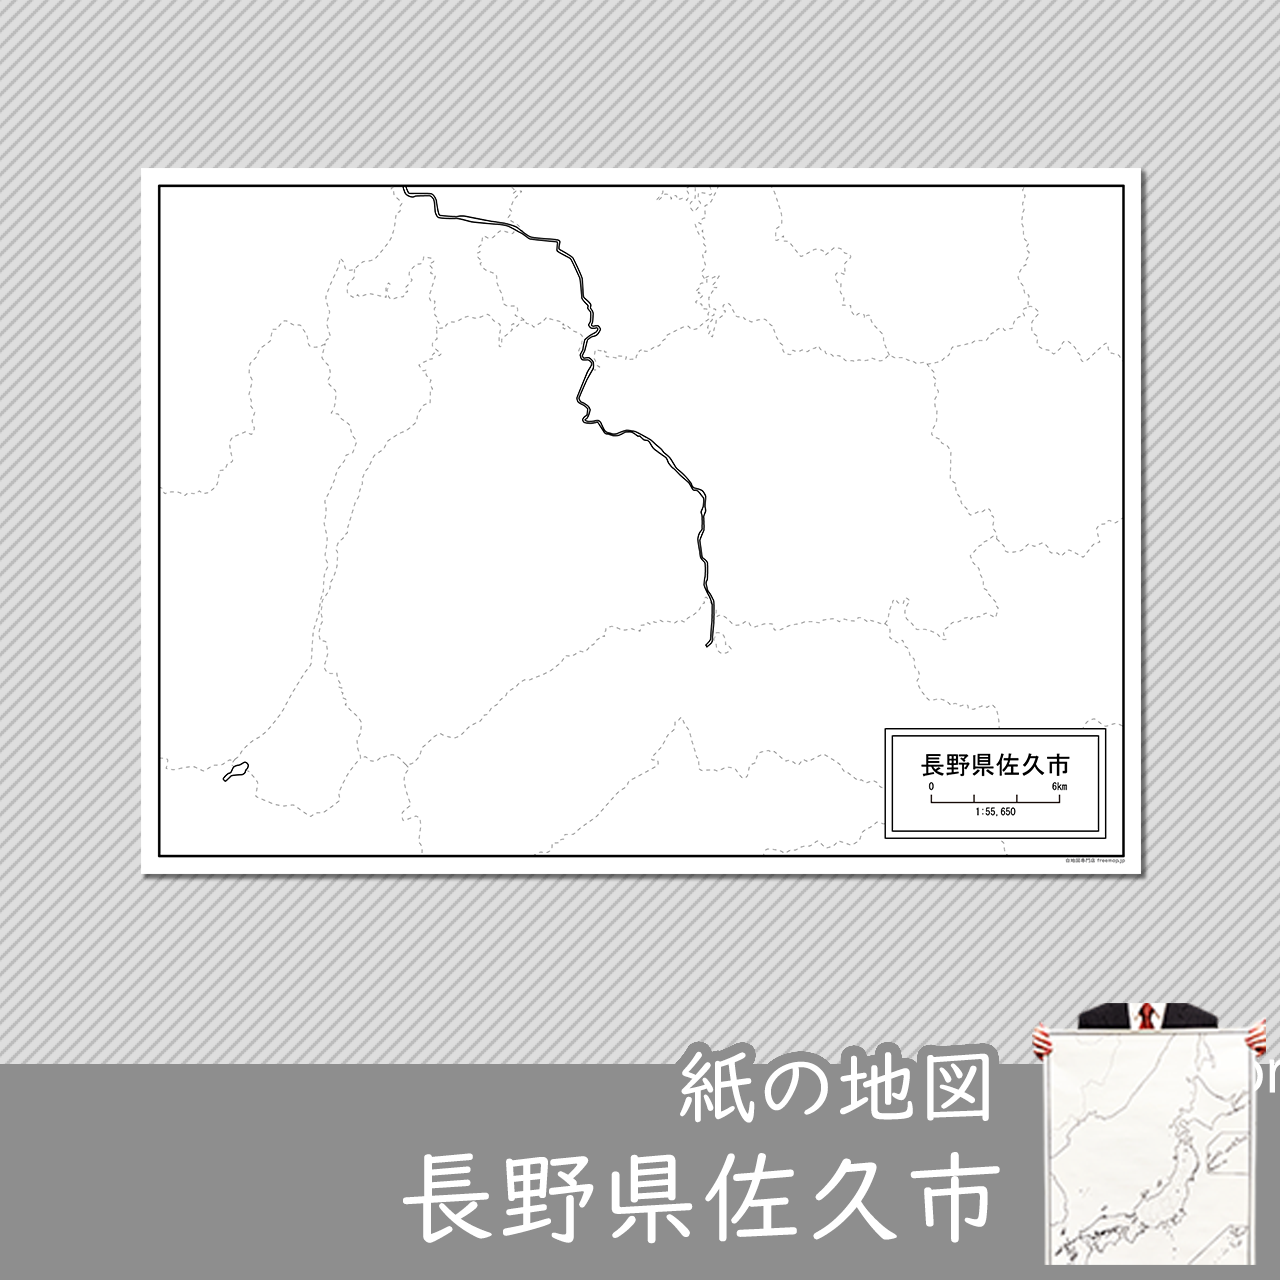 佐久市の紙の白地図のサムネイル